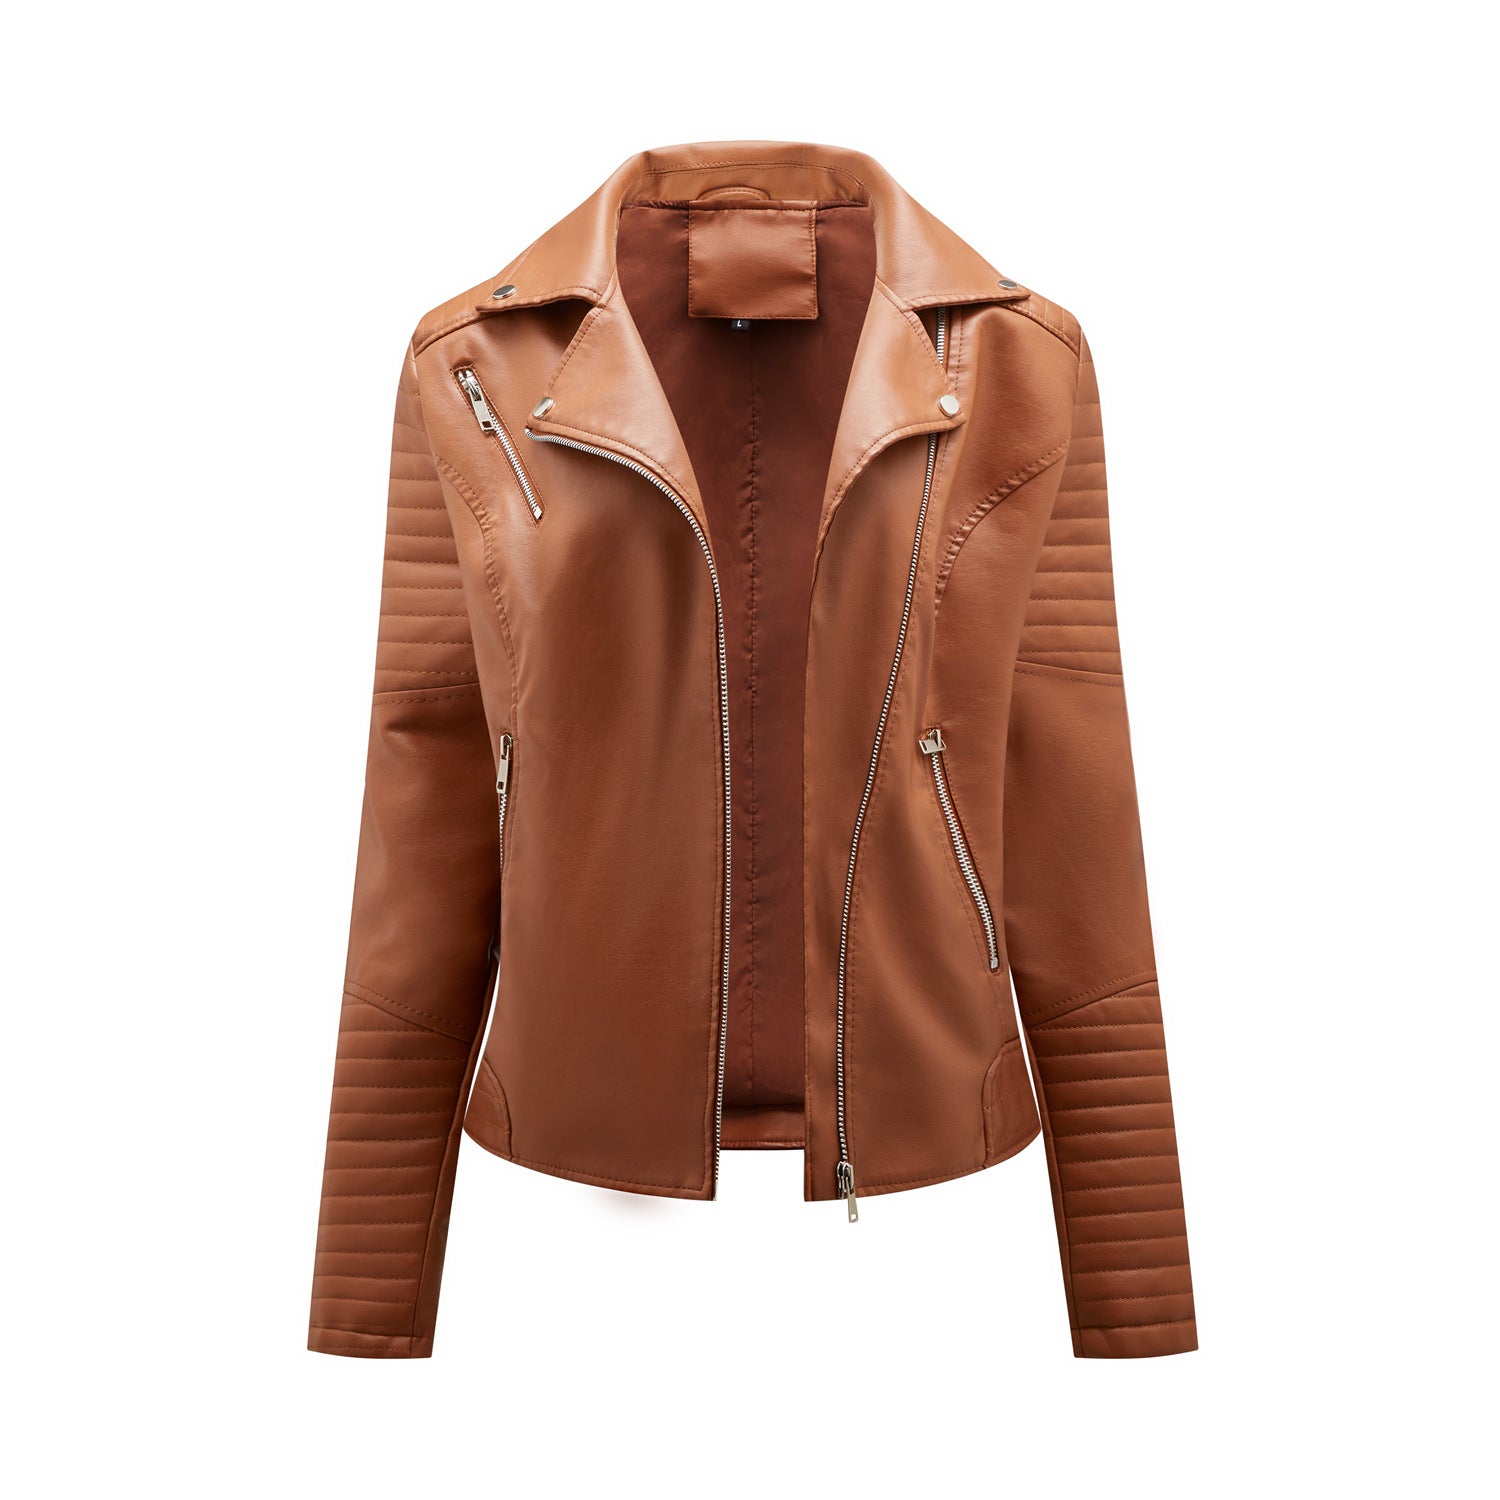 Conventional Short Leather Women's Size Slim Lapel Zipper Jacket Coat